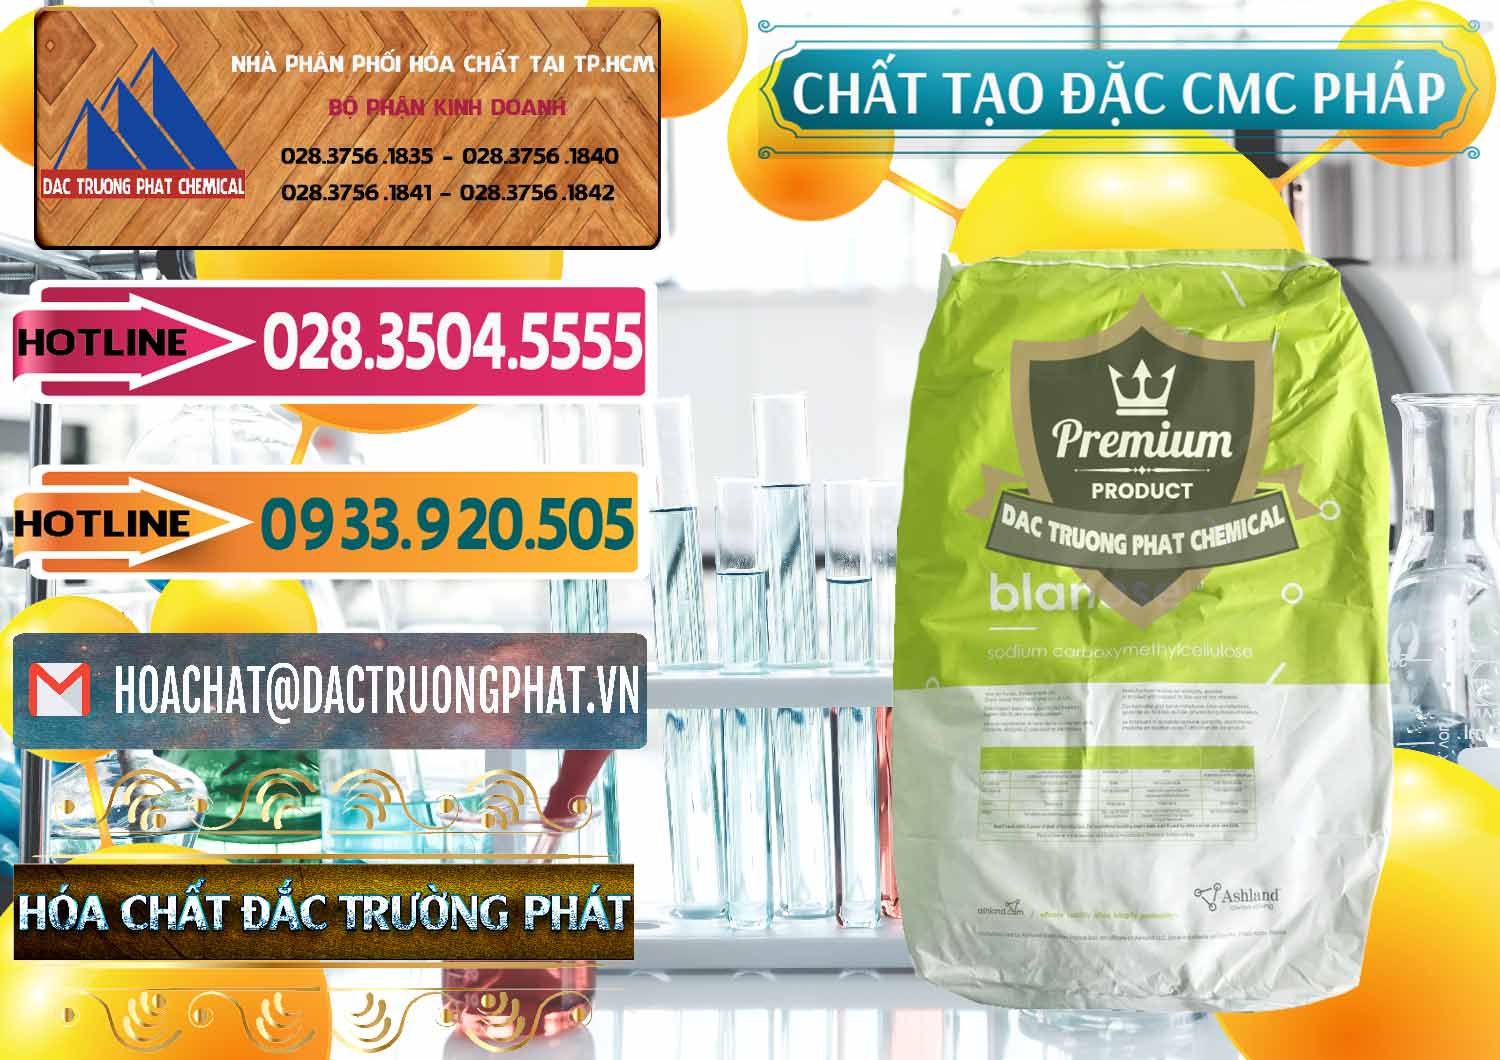 Cty kinh doanh & bán Chất Tạo Đặc CMC - Carboxyl Methyl Cellulose Pháp France - 0394 - Công ty chuyên nhập khẩu ( cung cấp ) hóa chất tại TP.HCM - dactruongphat.vn